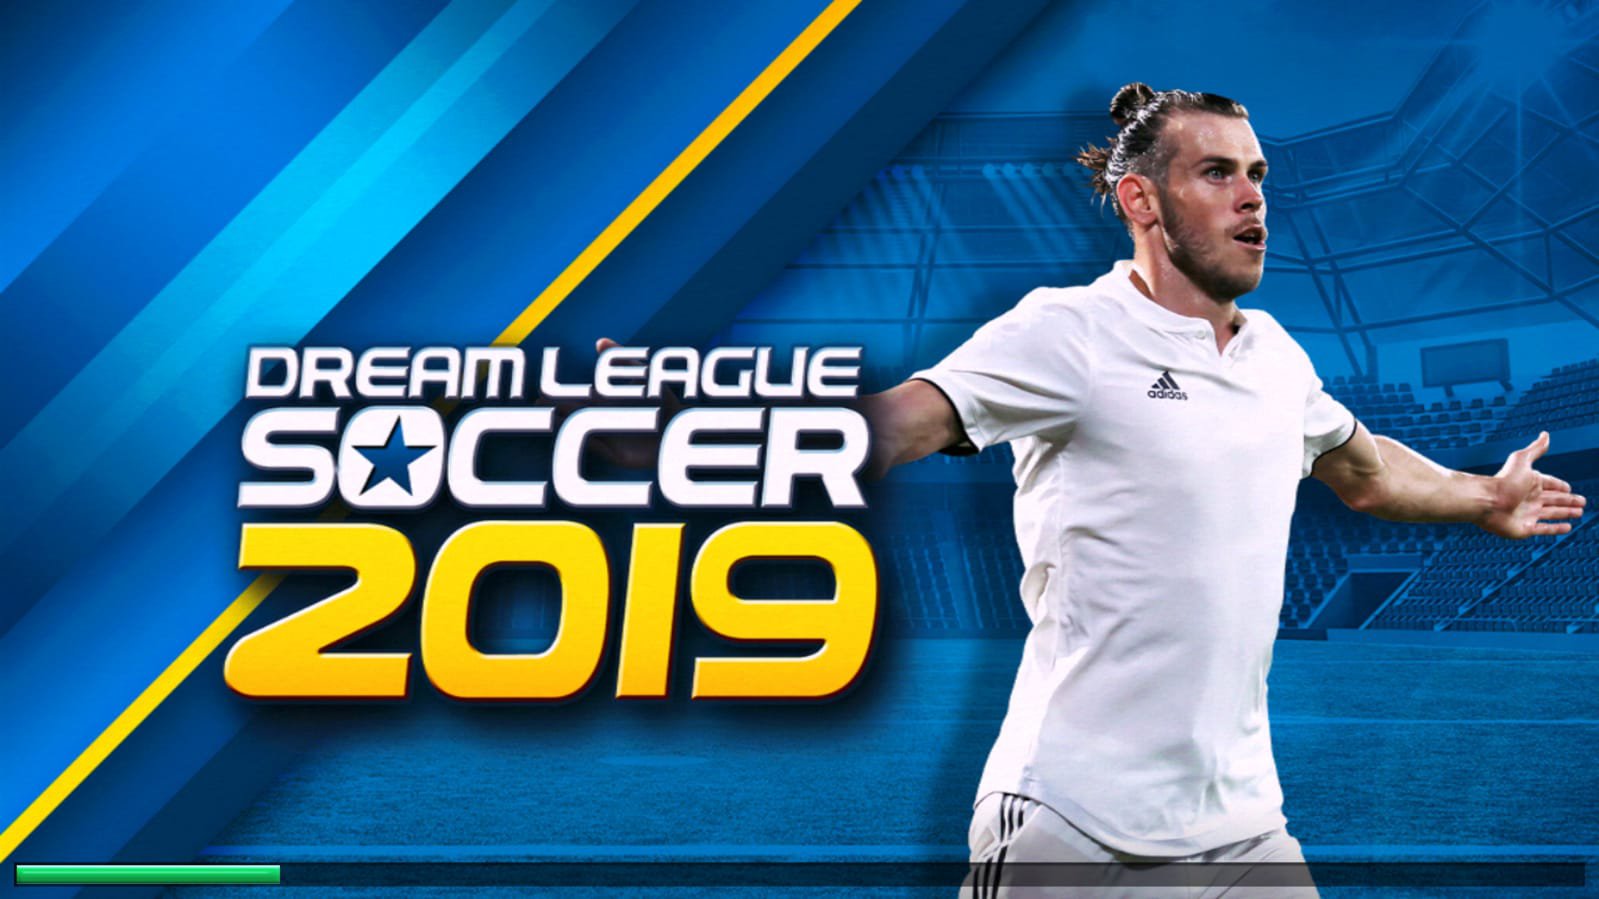 Dream league soccer 2019 download apk